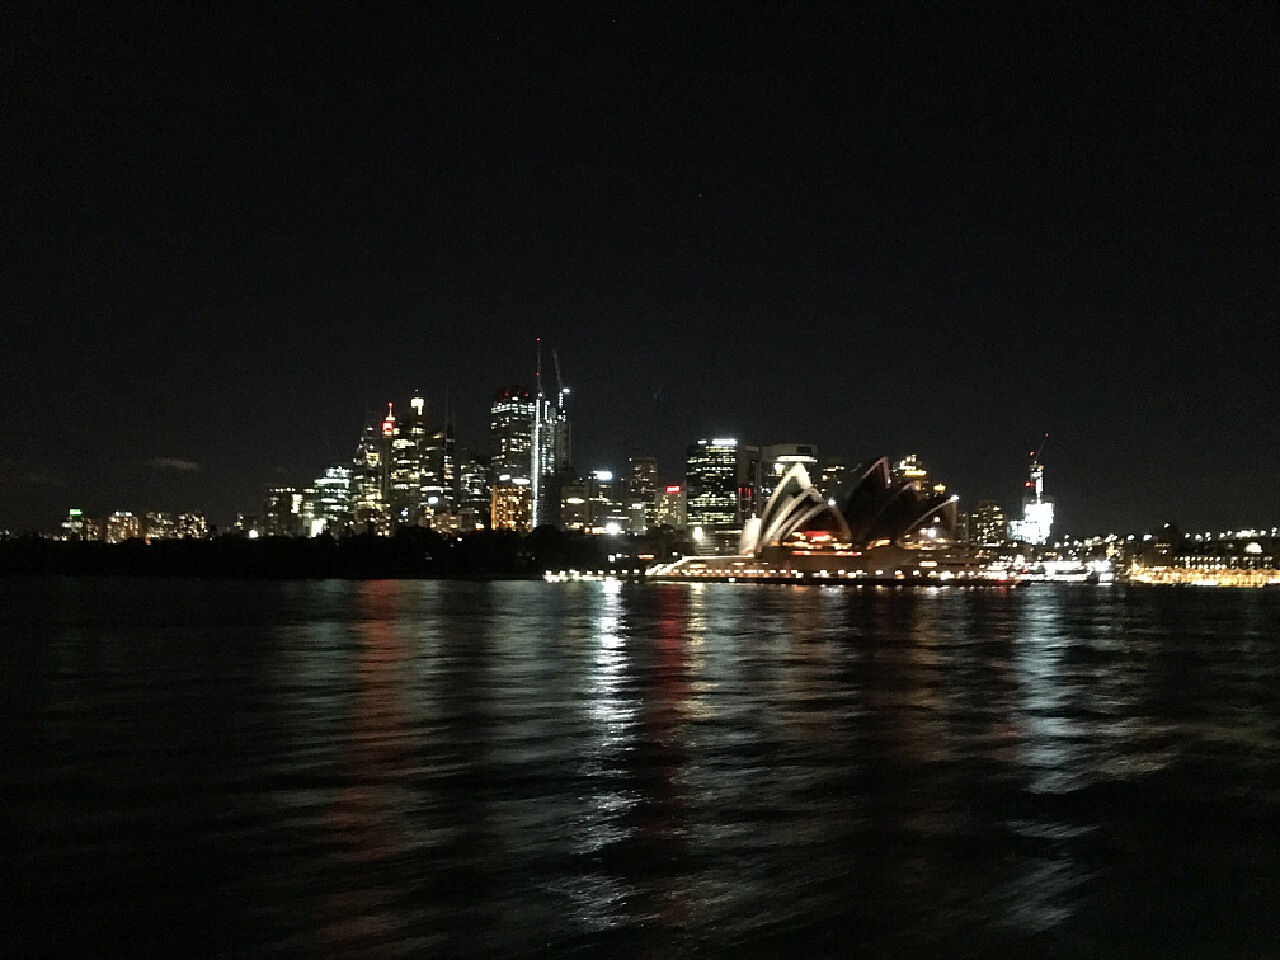 悉尼歌剧院夜景壁纸图片-壁纸高清